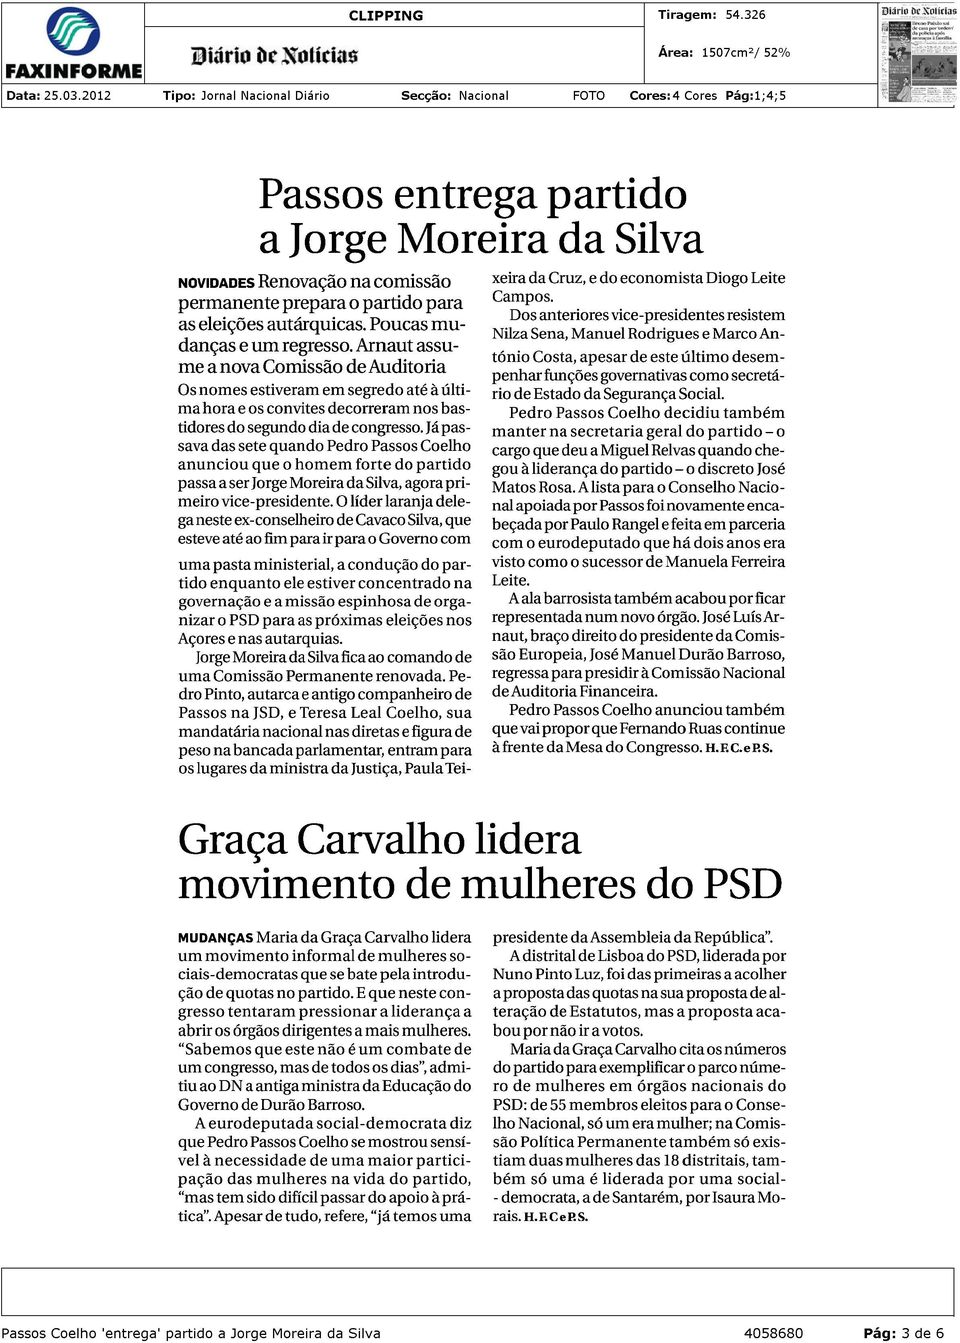 Jápassava das sete quando Pedro Passos Coelho anunciou que o homem forte do partido passa a ser Jorge Moreira da Silva, agora primeiro vice-presidente.